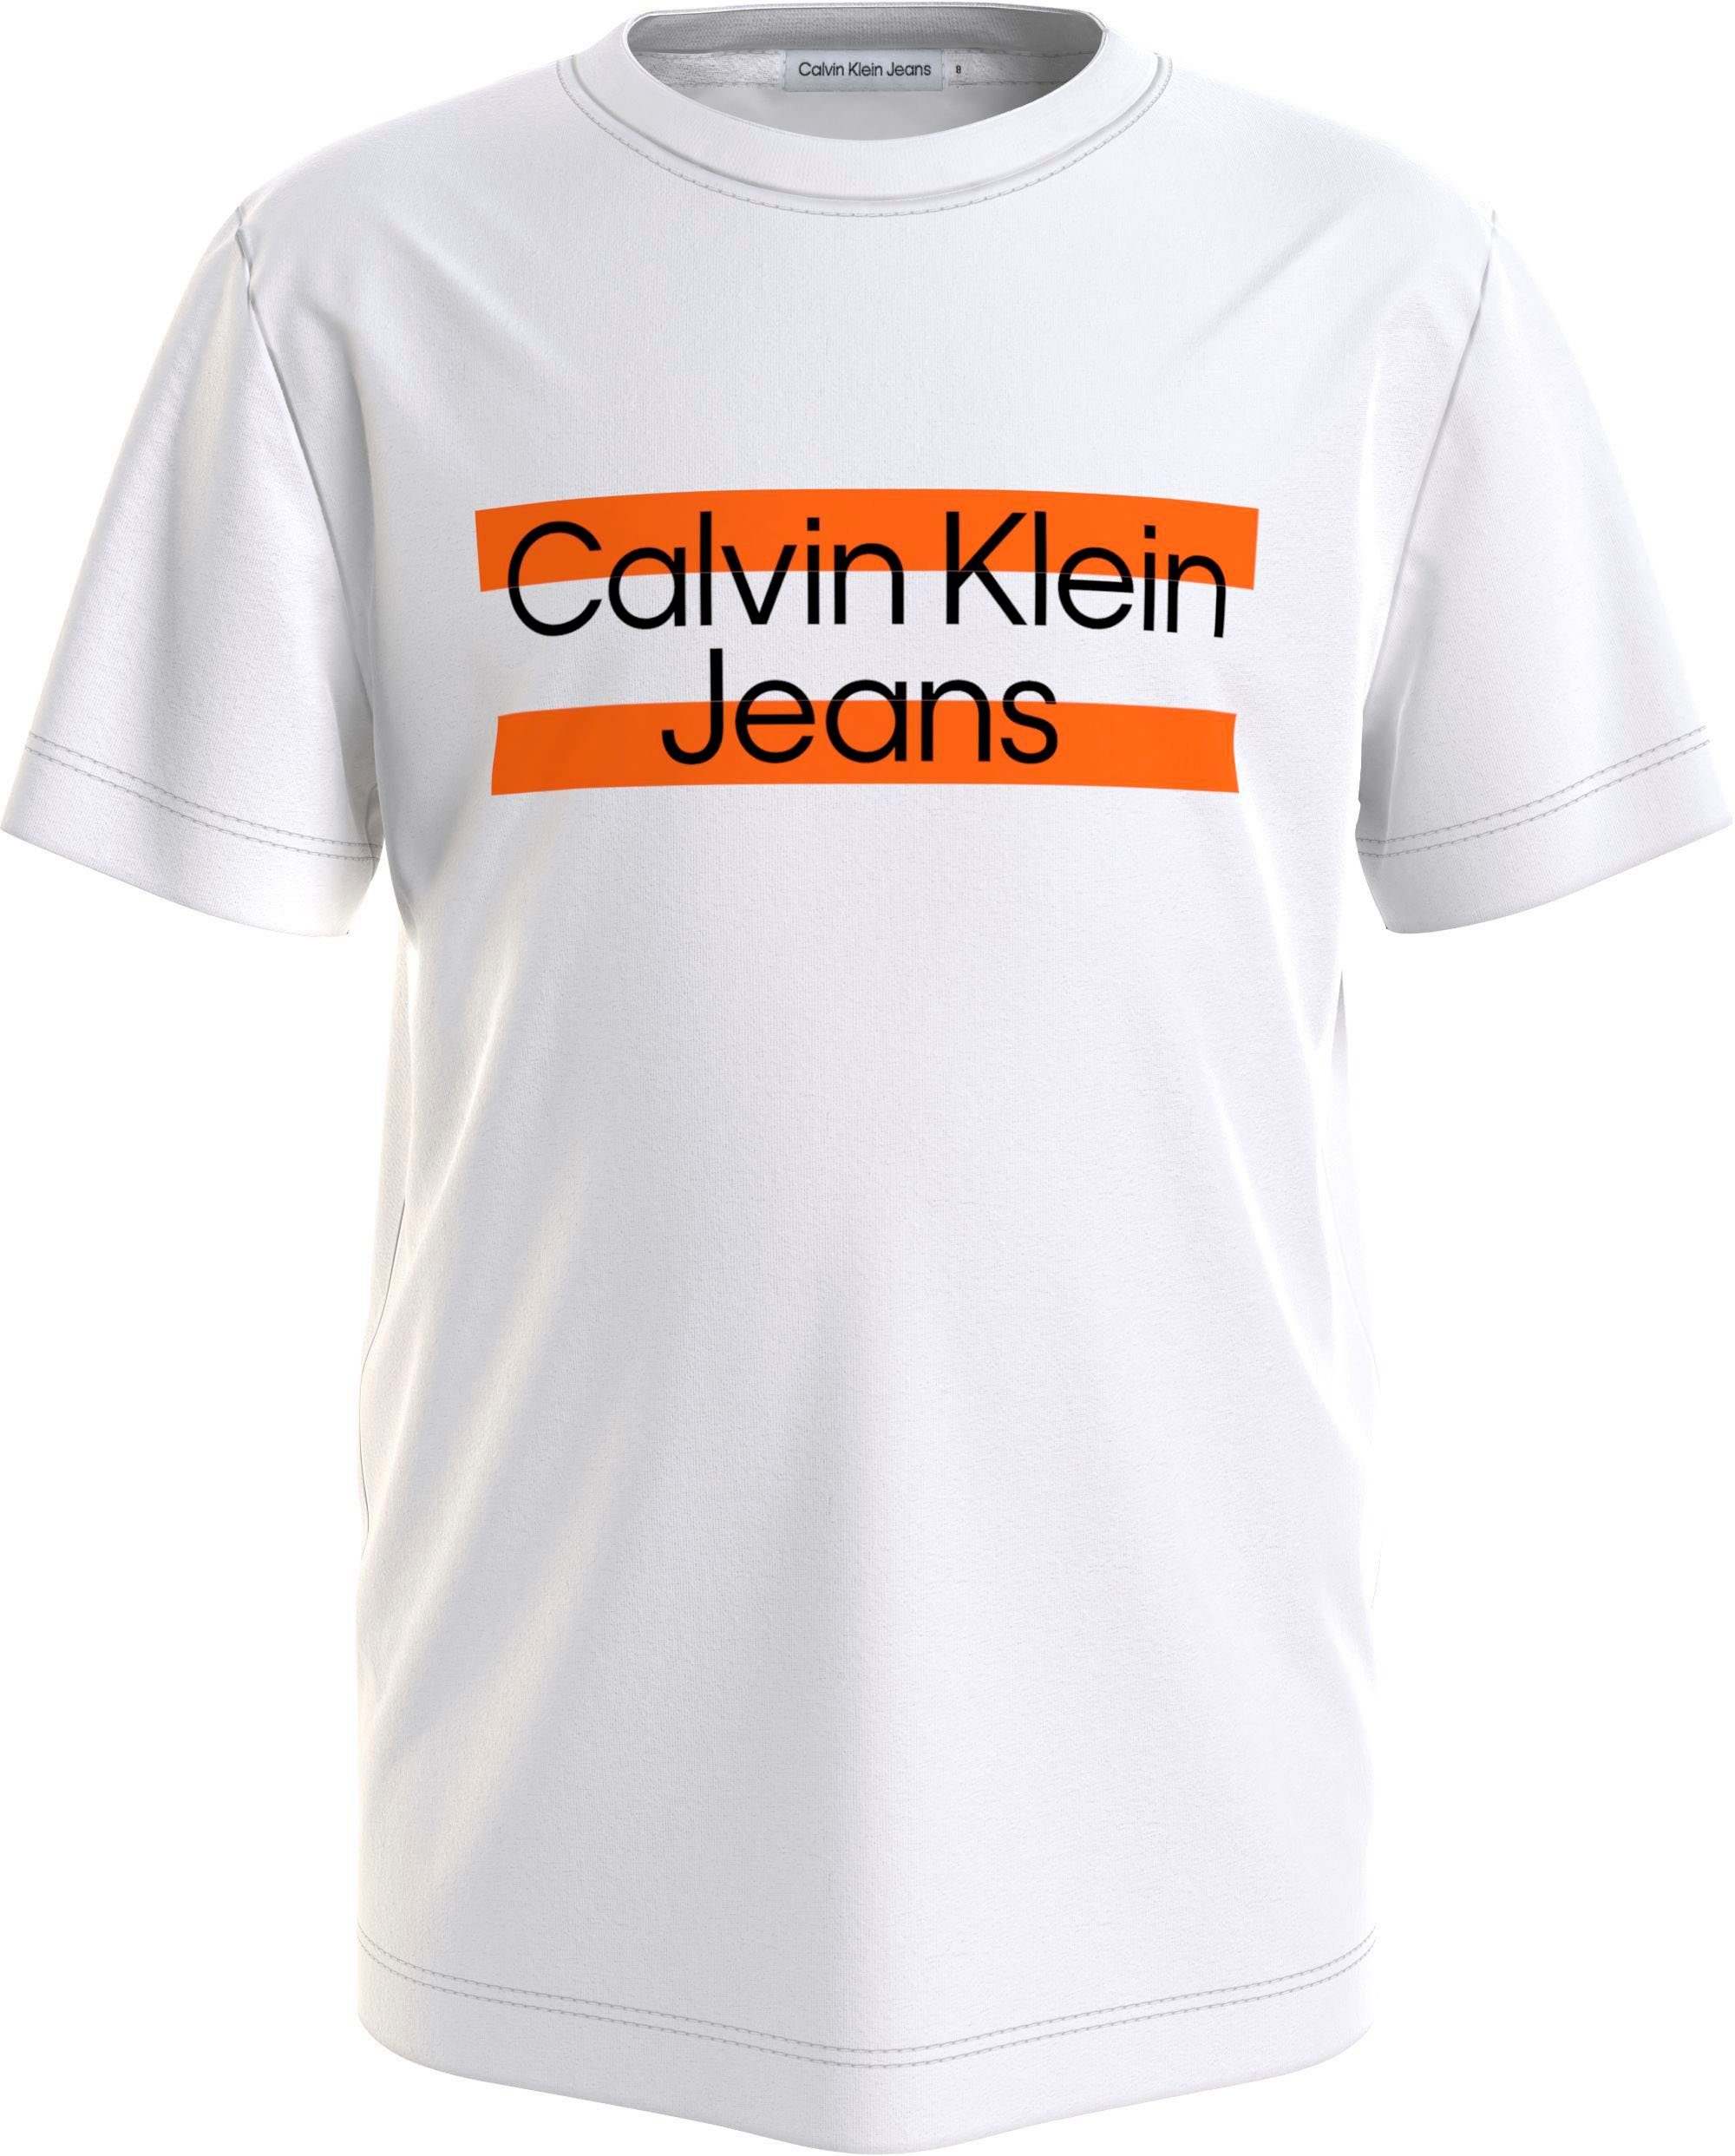 Klein auf Logodruck weiß der T-Shirt Jeans Klein Calvin mit Calvin Brust